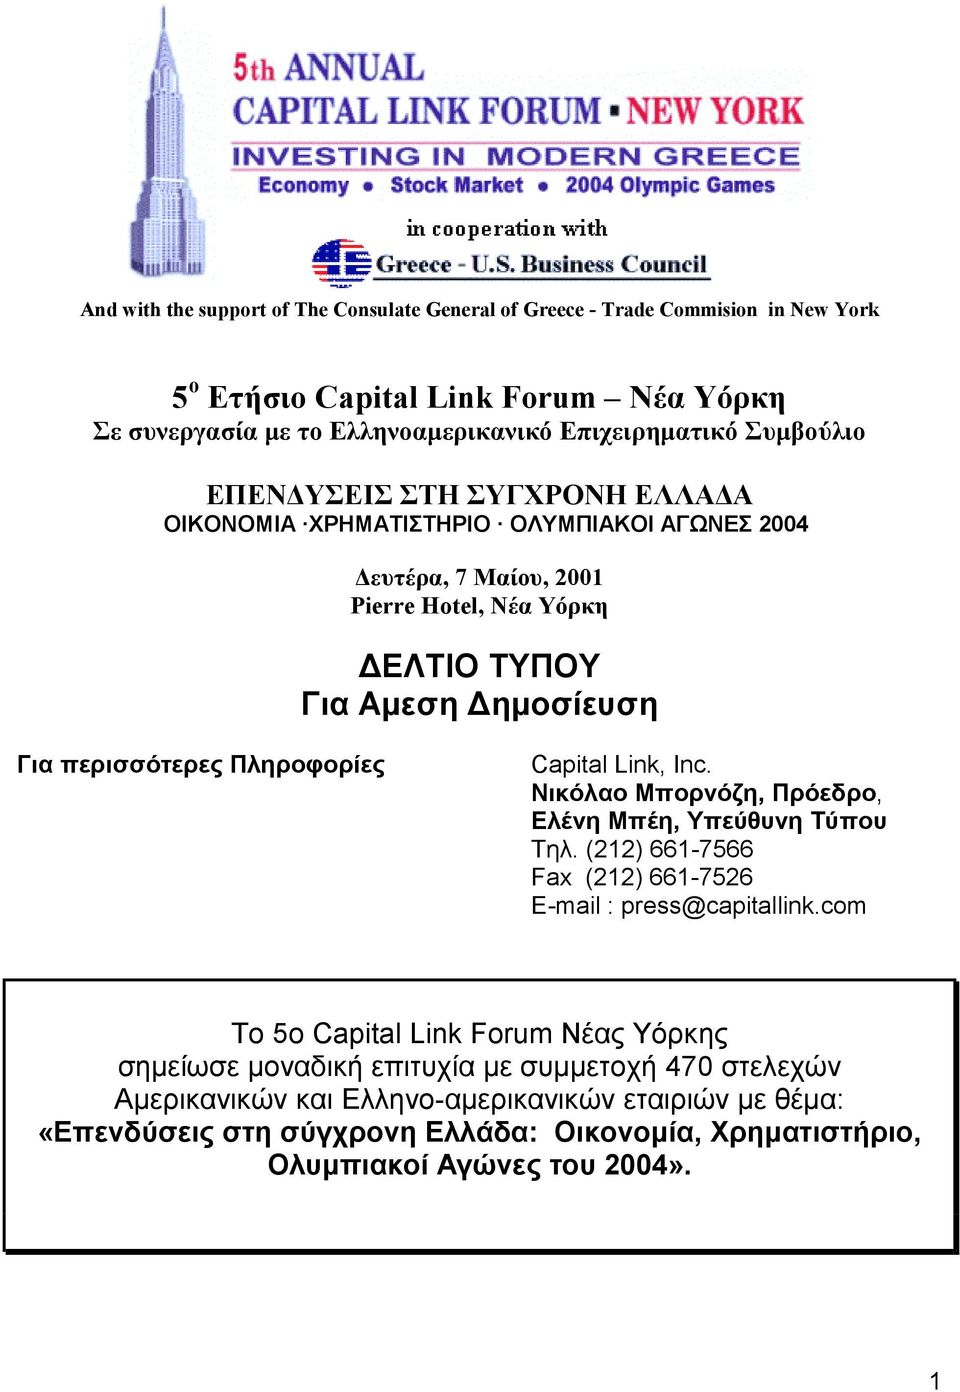 Πληροφορίες Capital Link, Inc. Νικόλαο Μπορνόζη, Πρόεδρο, Ελένη Μπέη, Υπεύθυνη Τύπου Tηλ. (212) 661-7566 Fax (212) 661-7526 E-mail : press@capitallink.